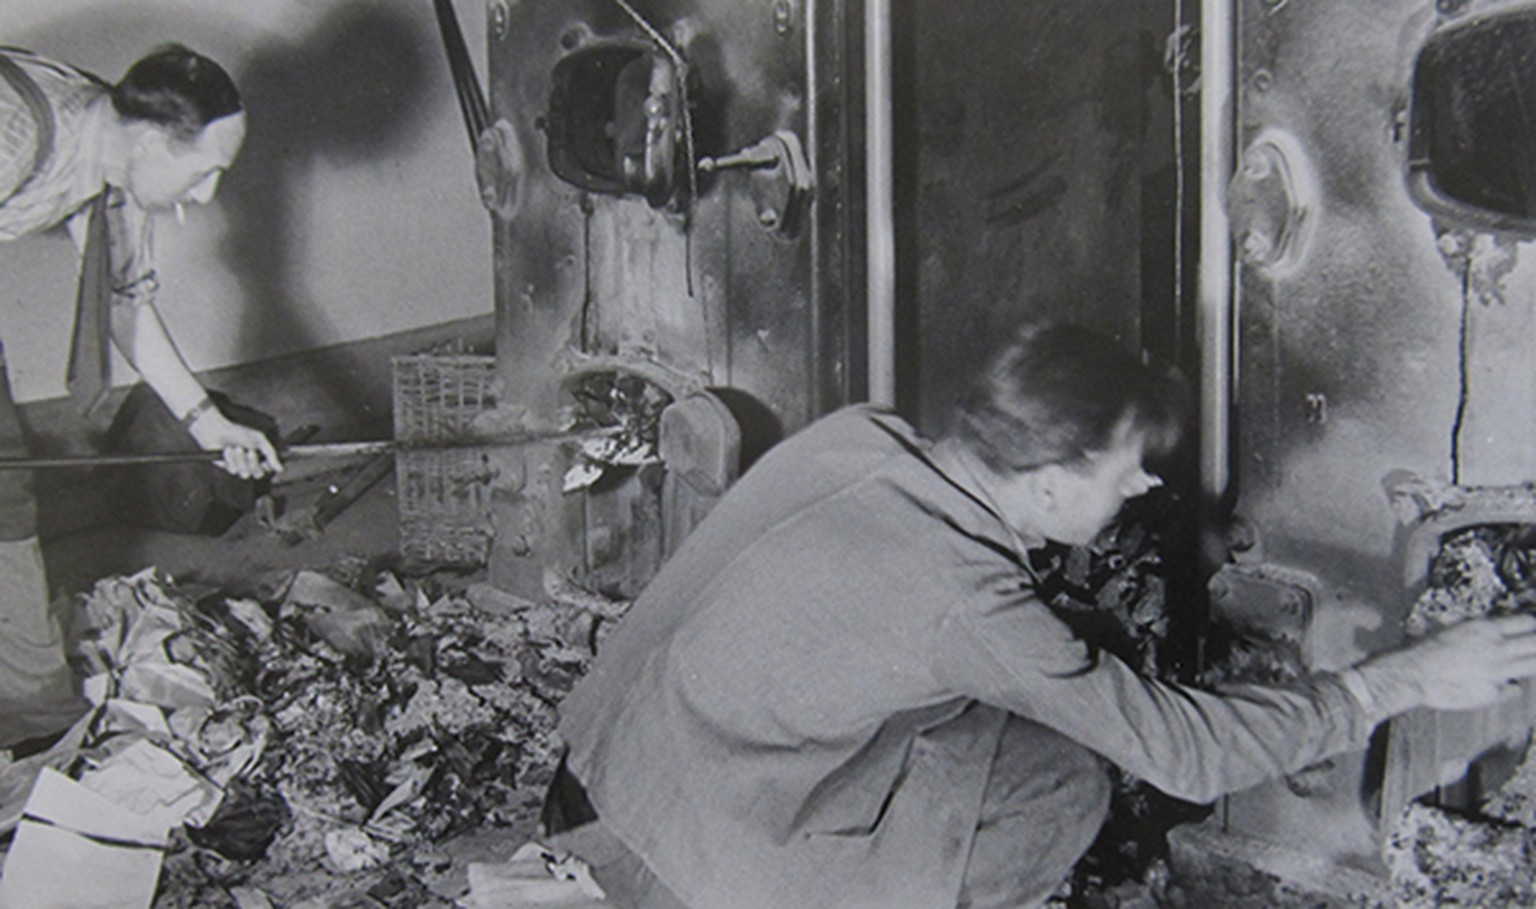 Bis ganz zuletzt wurden im Heizungskeller der Botschaft Akten verbrannt. Das Bild der Bundesanwaltschaft zeigt die Aufräumarbeiten nach dem 8. Mail 1945.